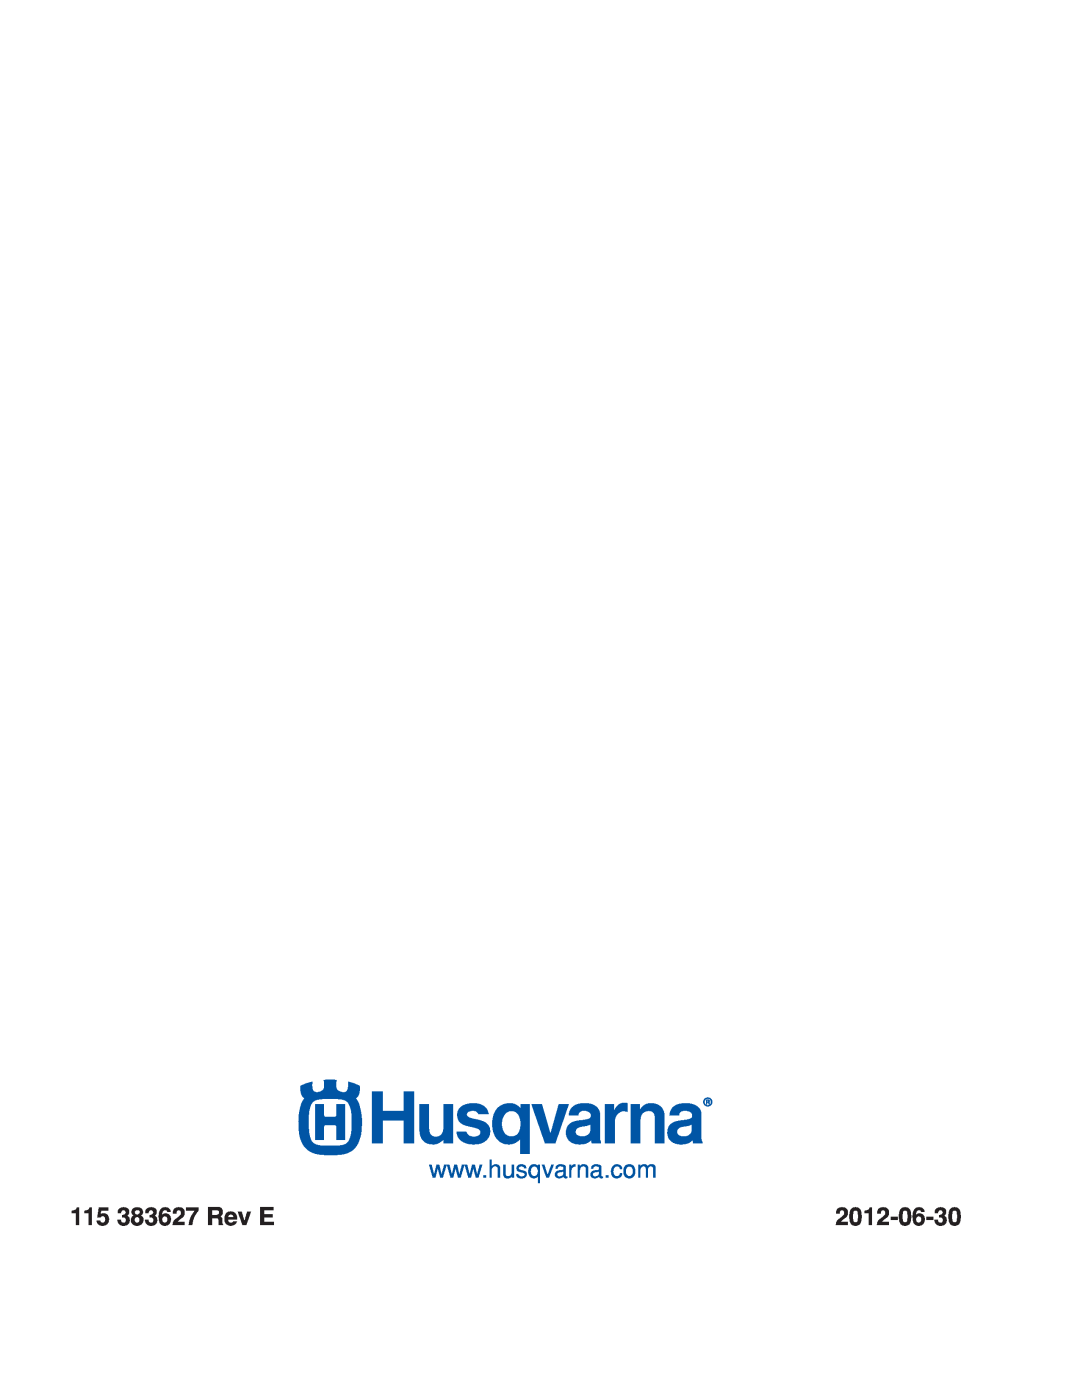 Husqvarna RZ3016/966612301, RZ3019 BF/966582101, RZ3016 CA/966612302 warranty 115 383627 Rev E, 2012-06-30 